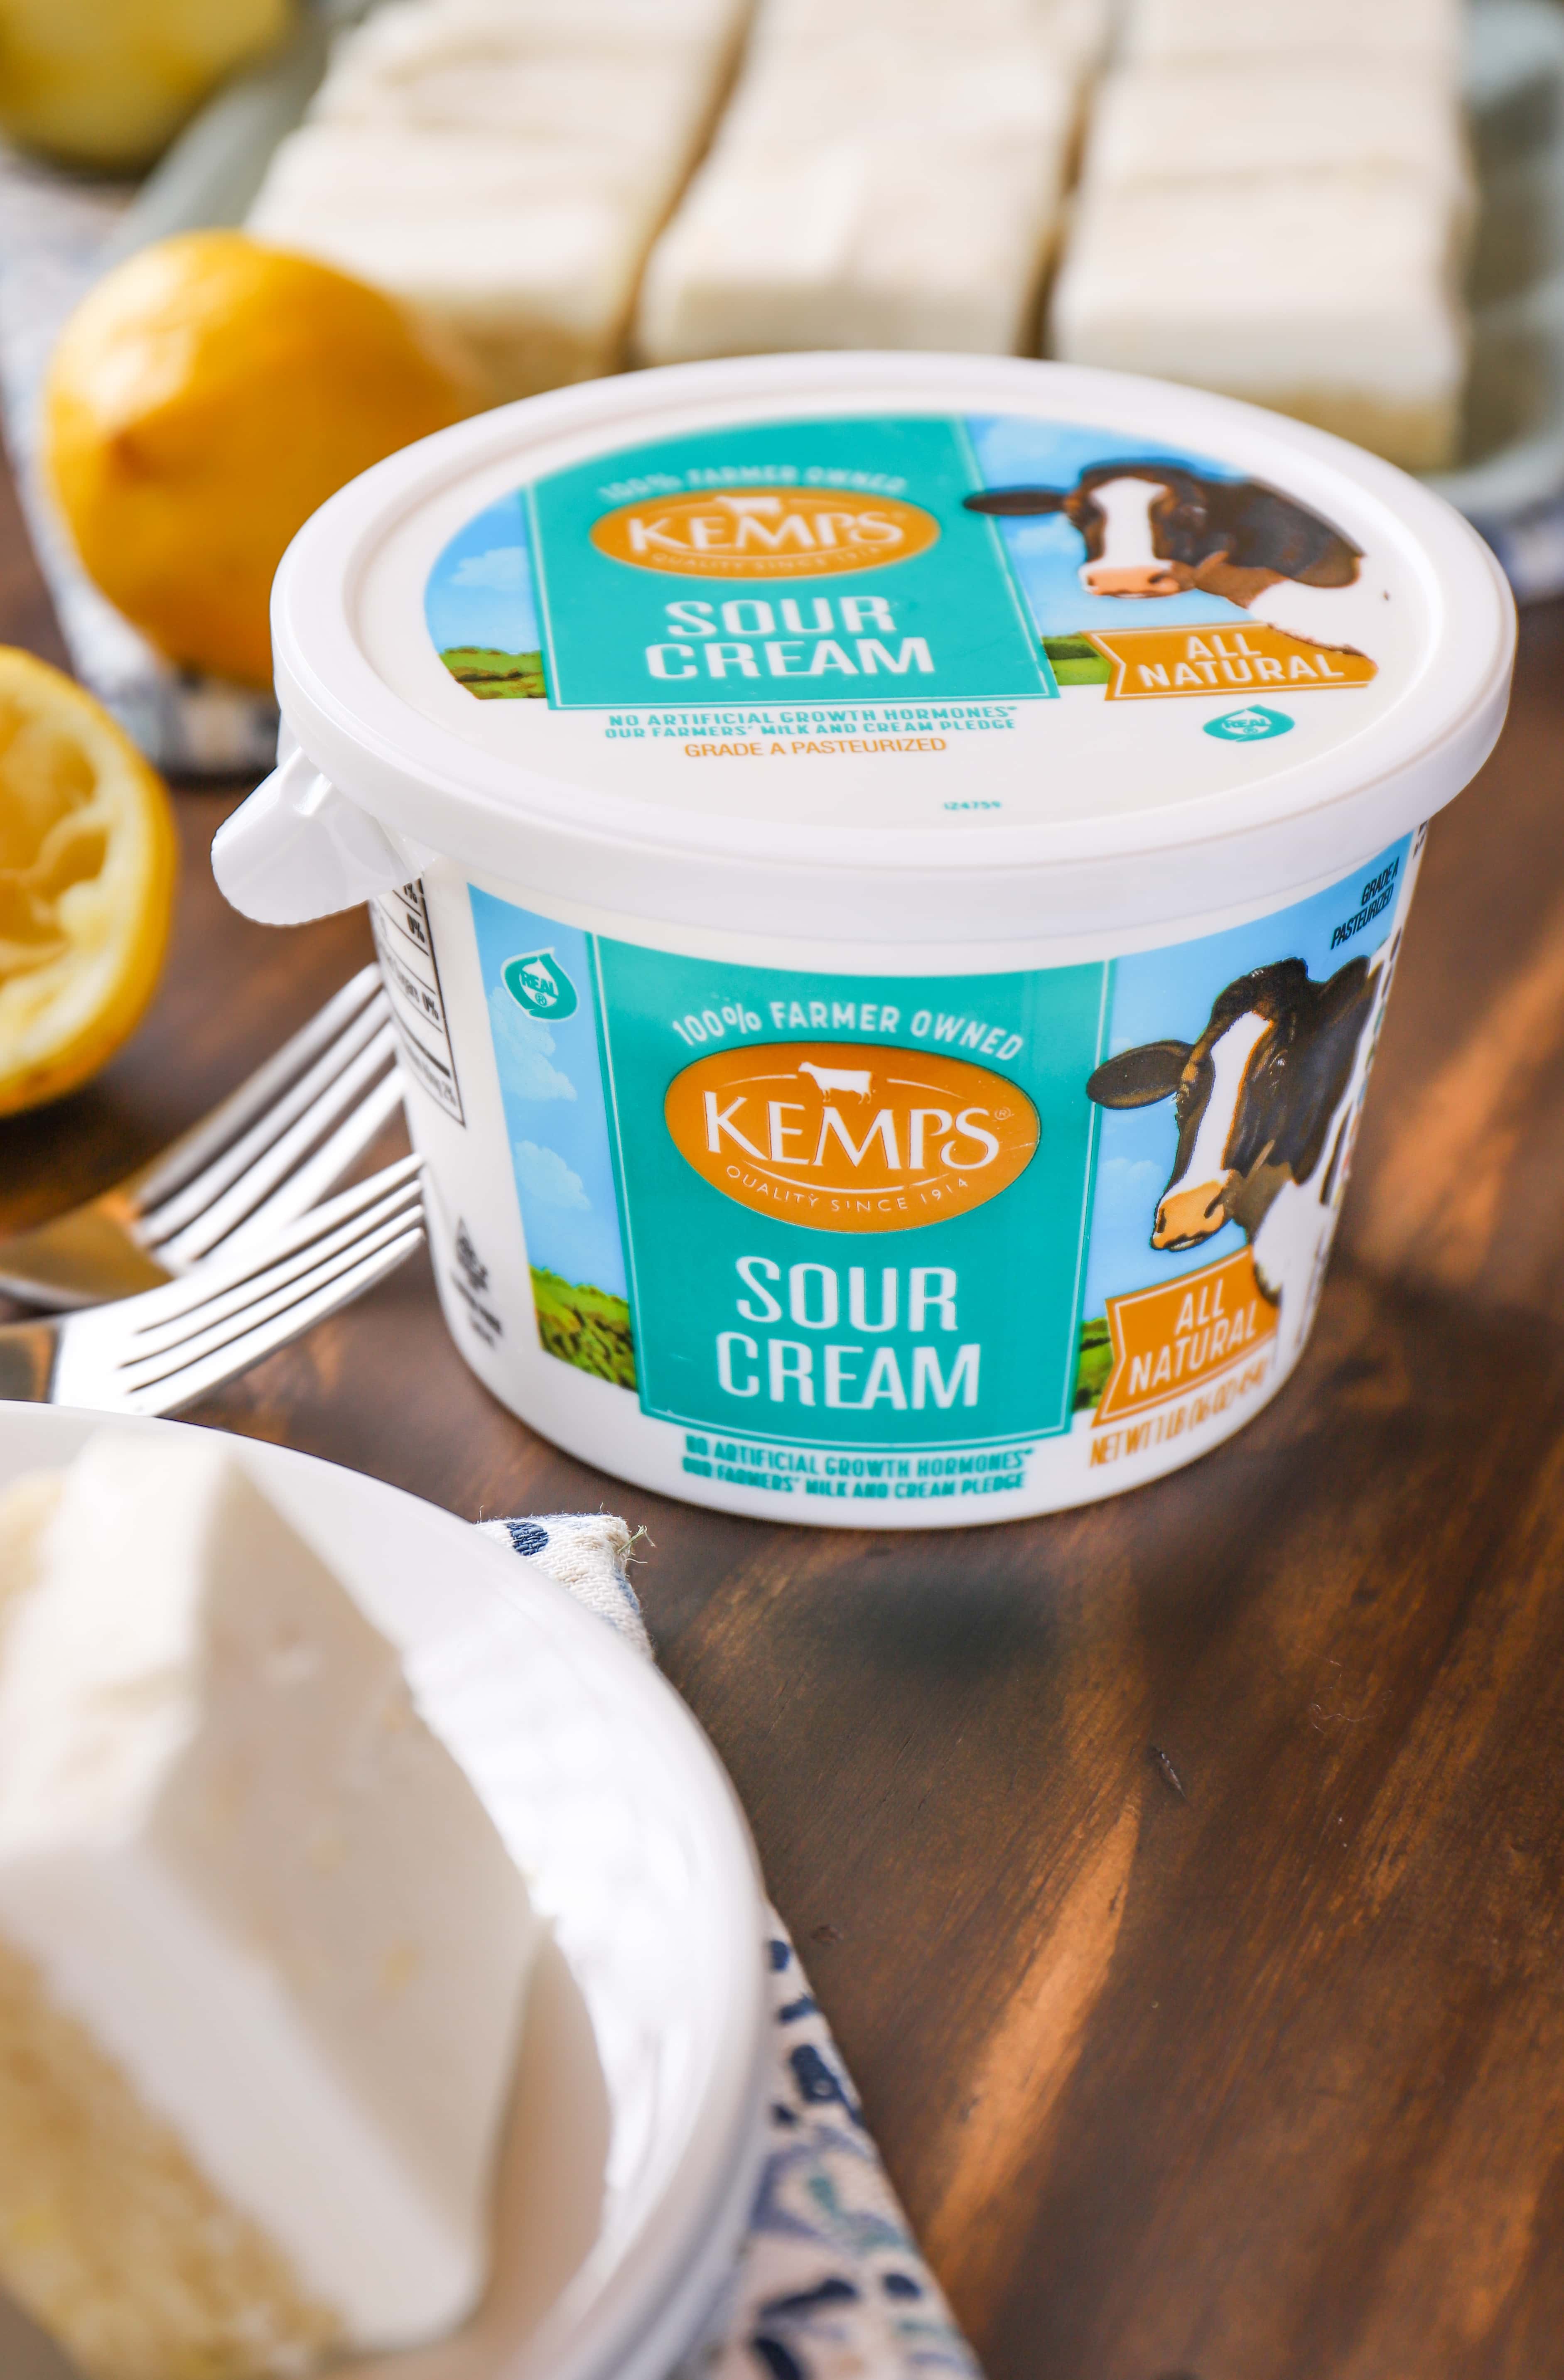 Kemps Sour Cream